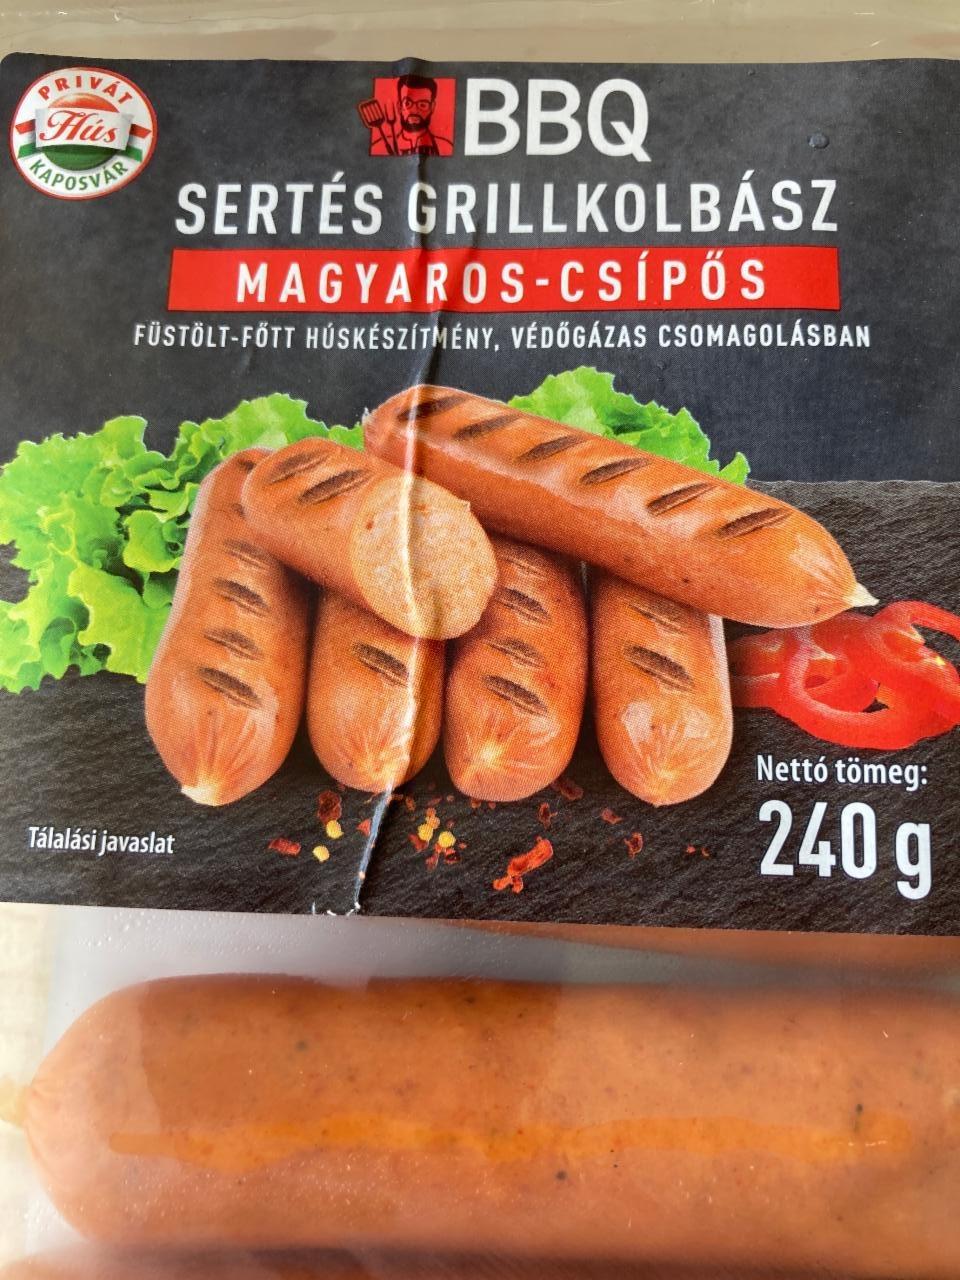 Képek - BBQ sertés grillkolbász magyaros csipős Privát hús